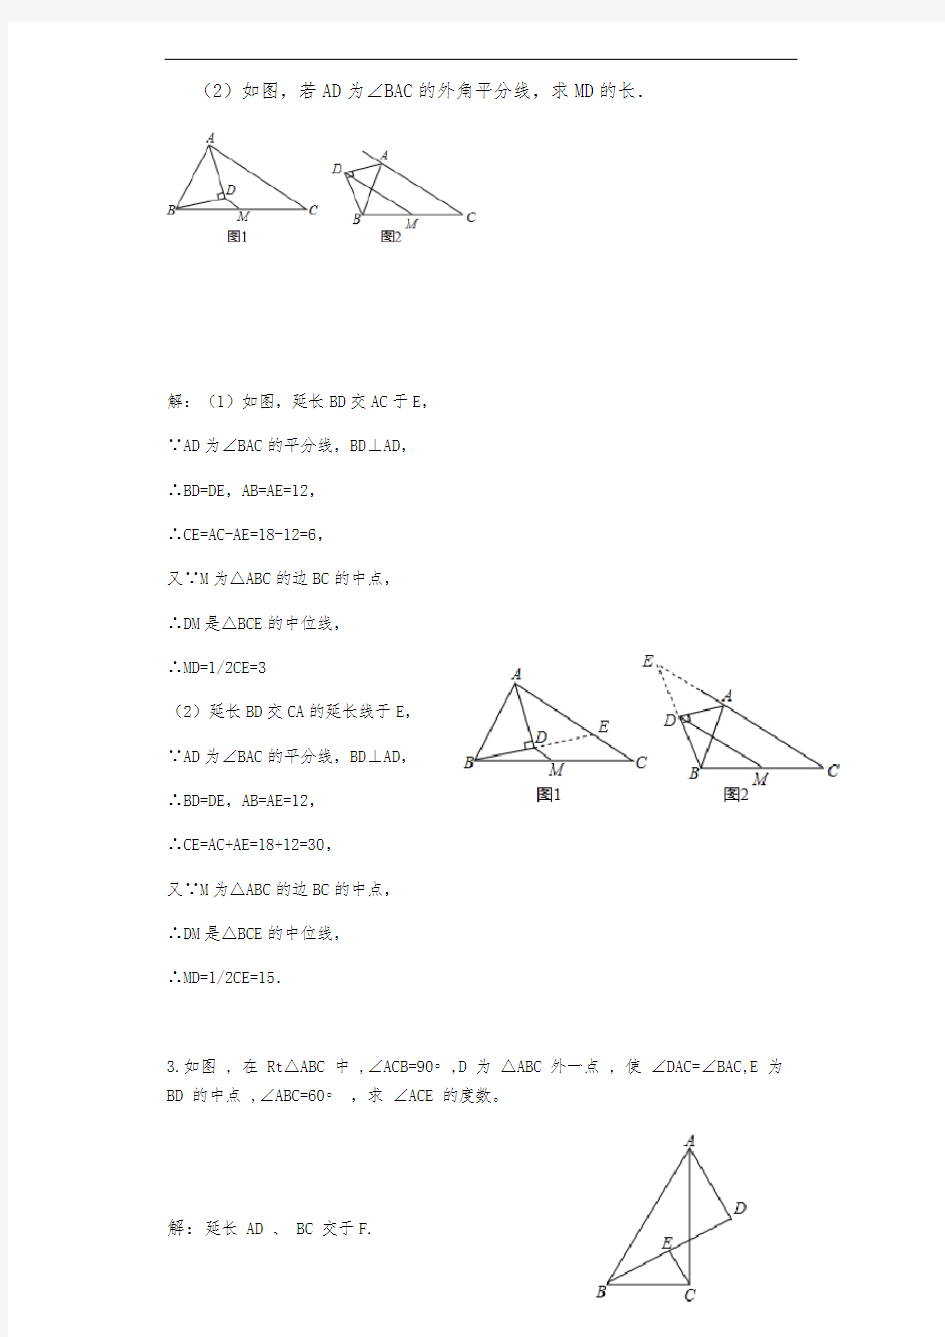 构造三角形中位线的方法